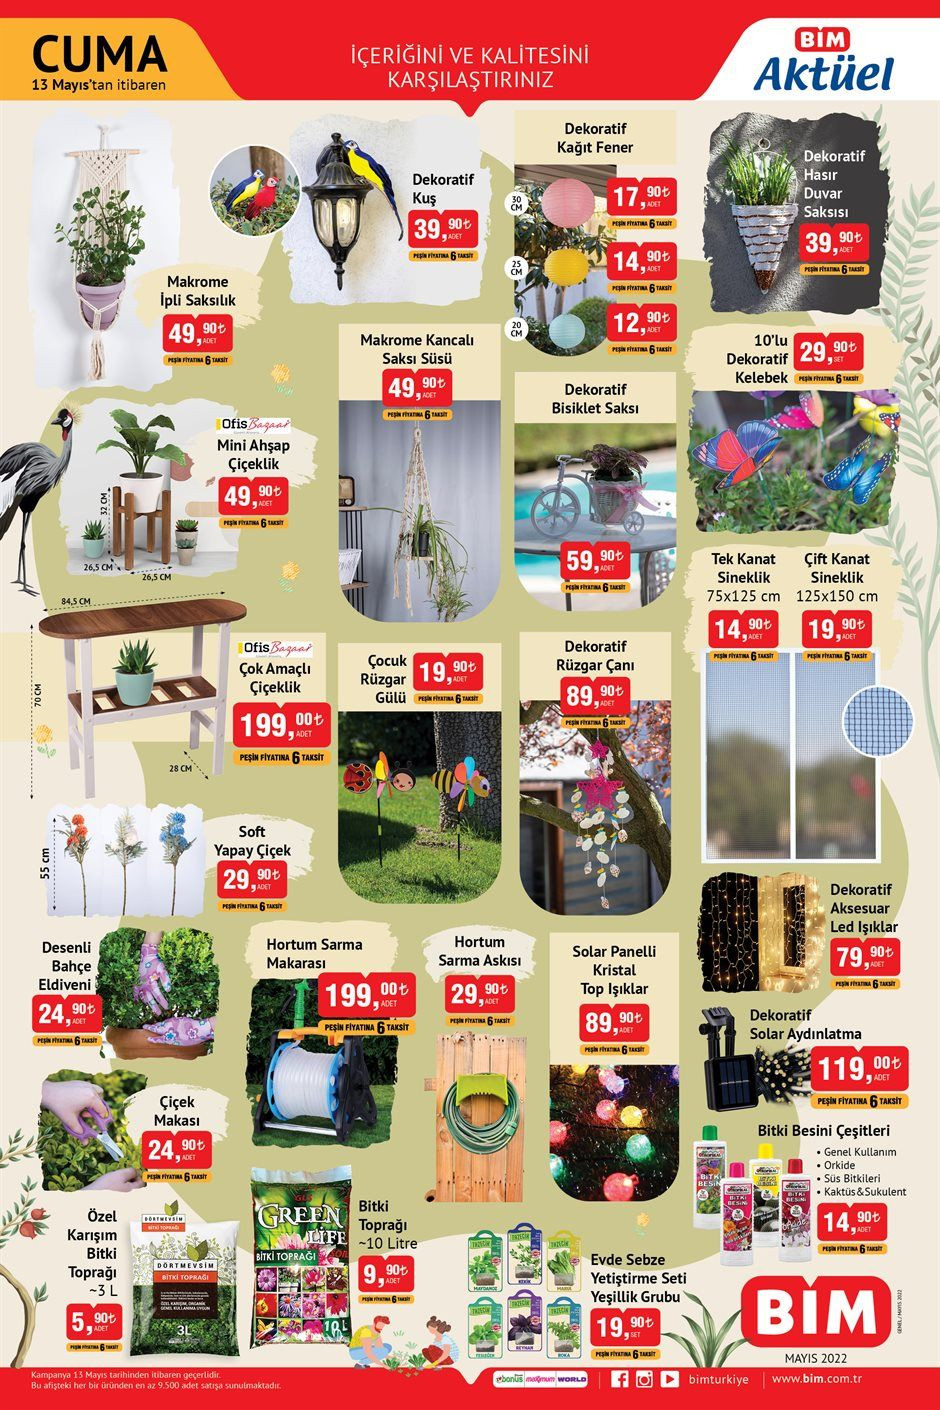 BİM 13 Mayıs 2022 aktüel ürünler Cuma katalog fiyat listesi - Sayfa 2